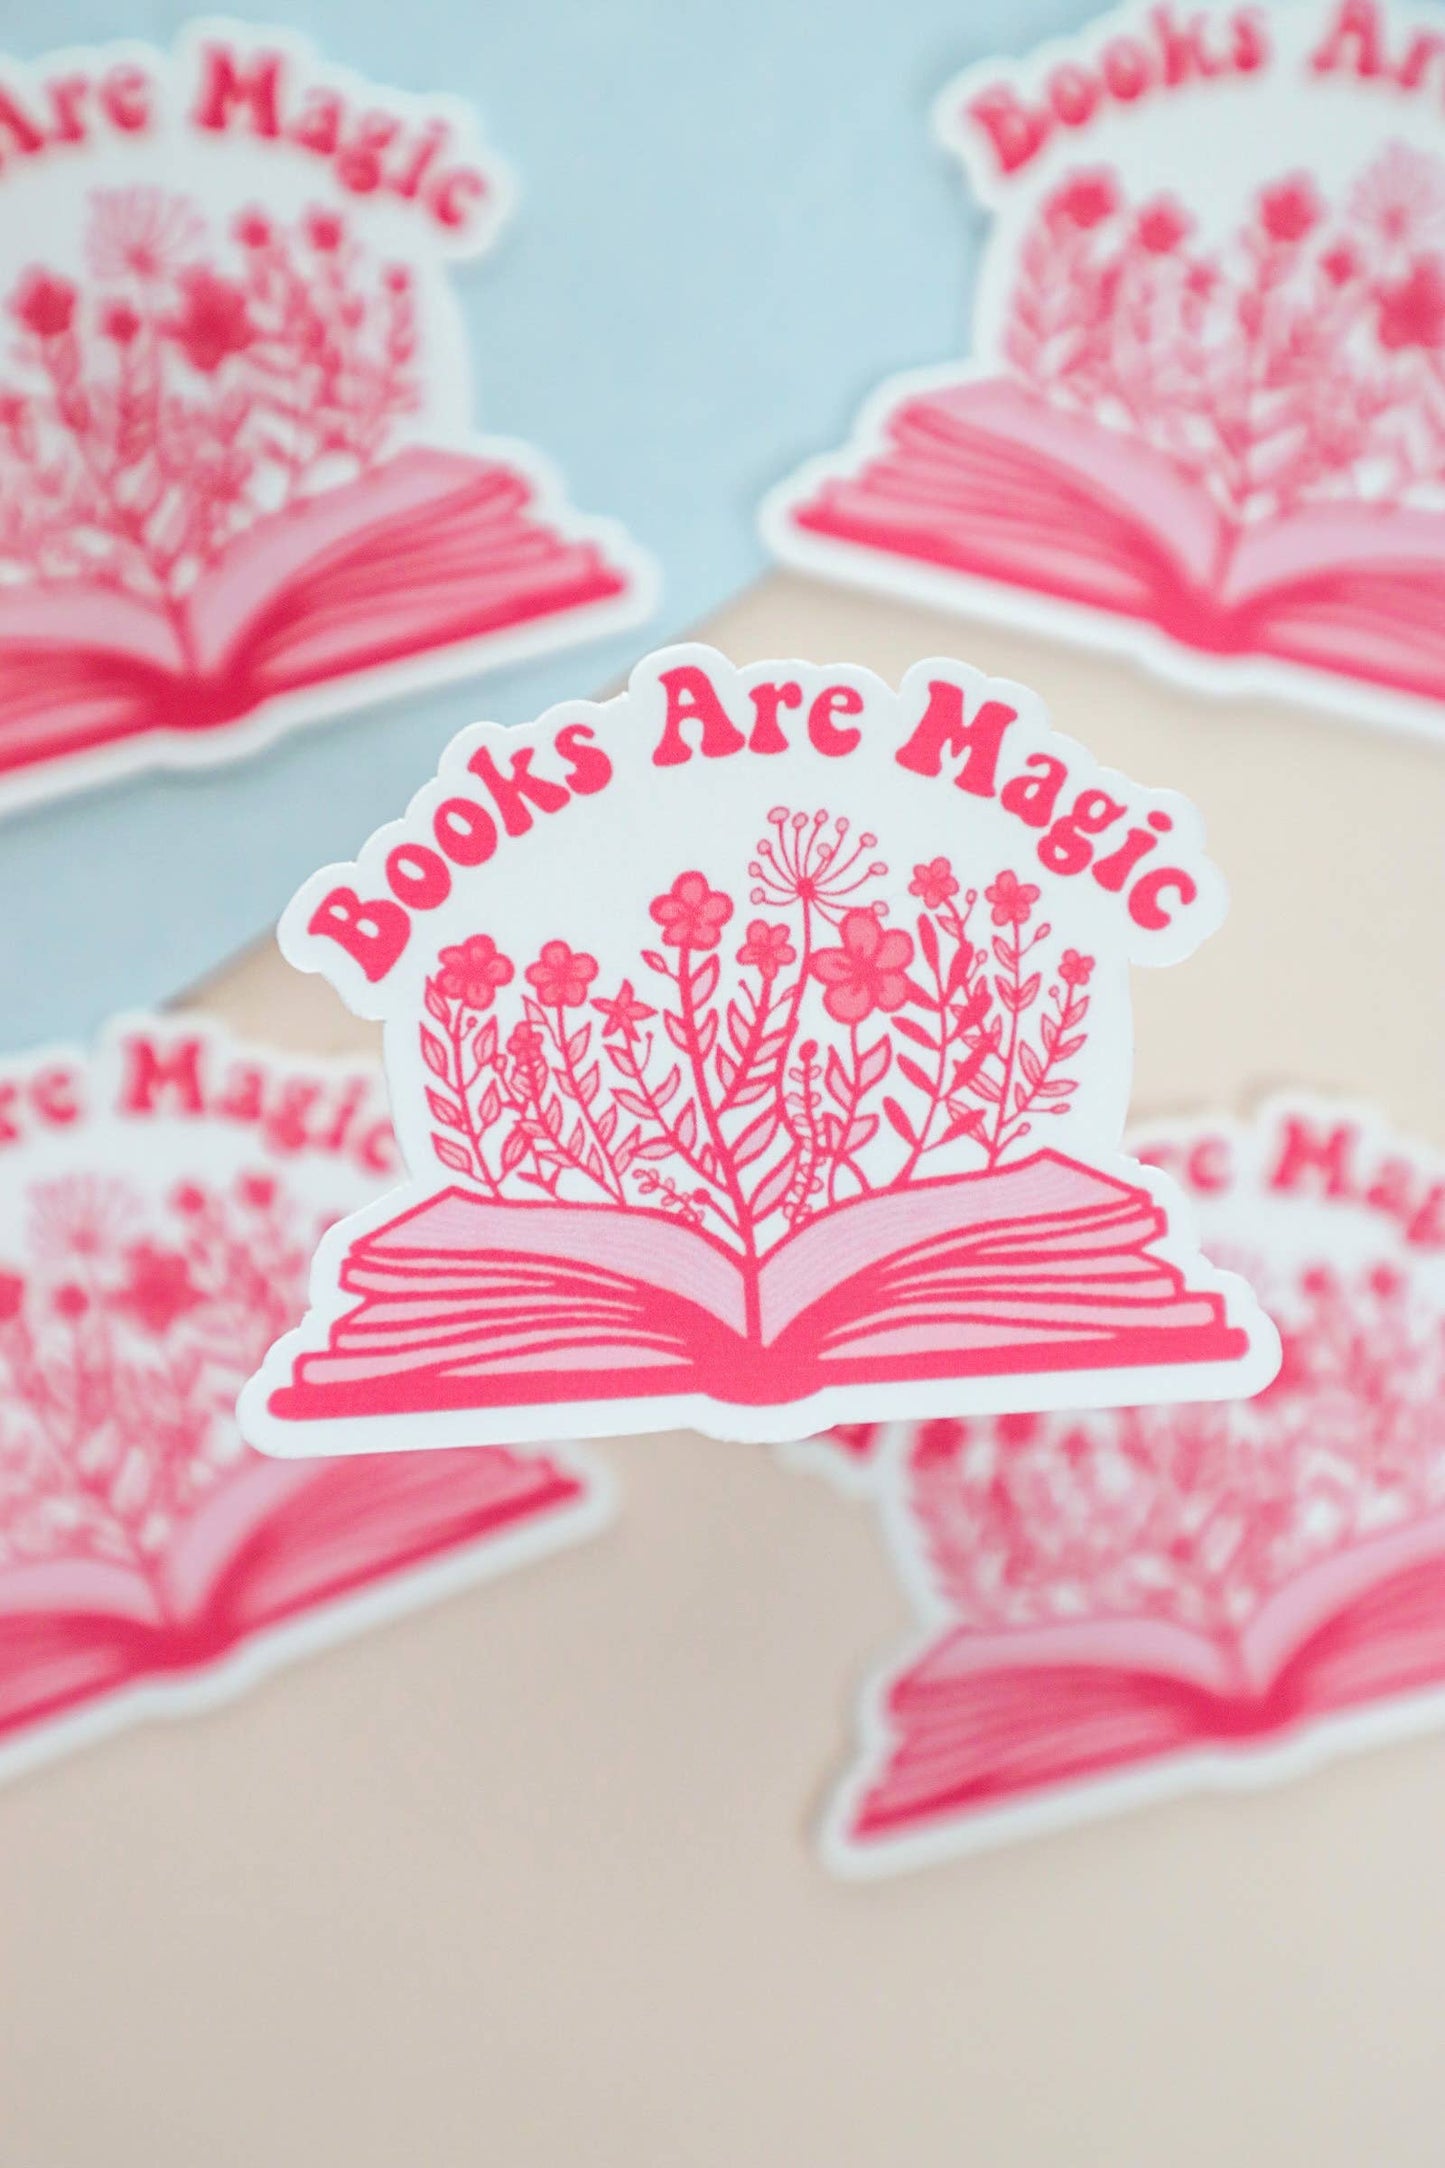 Sticker-Books-21: Books Are Magic Sticker